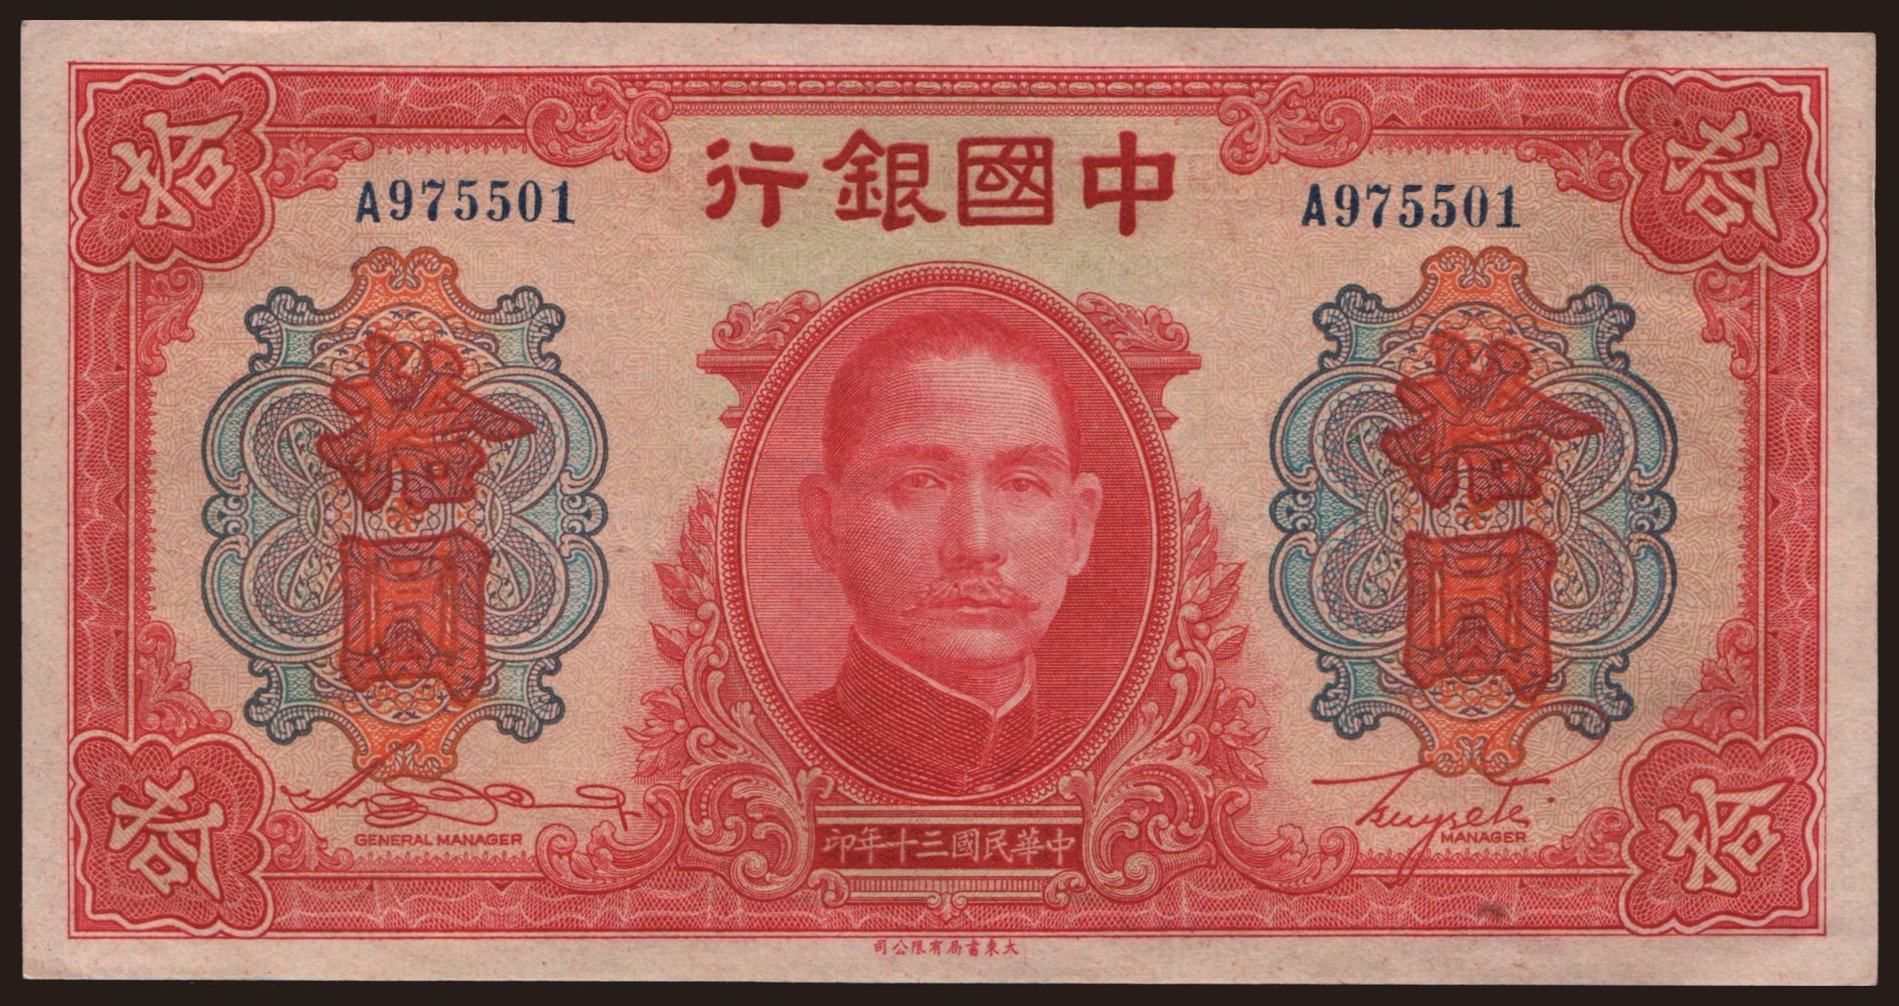 Bank of China, 10 yuan, 1941